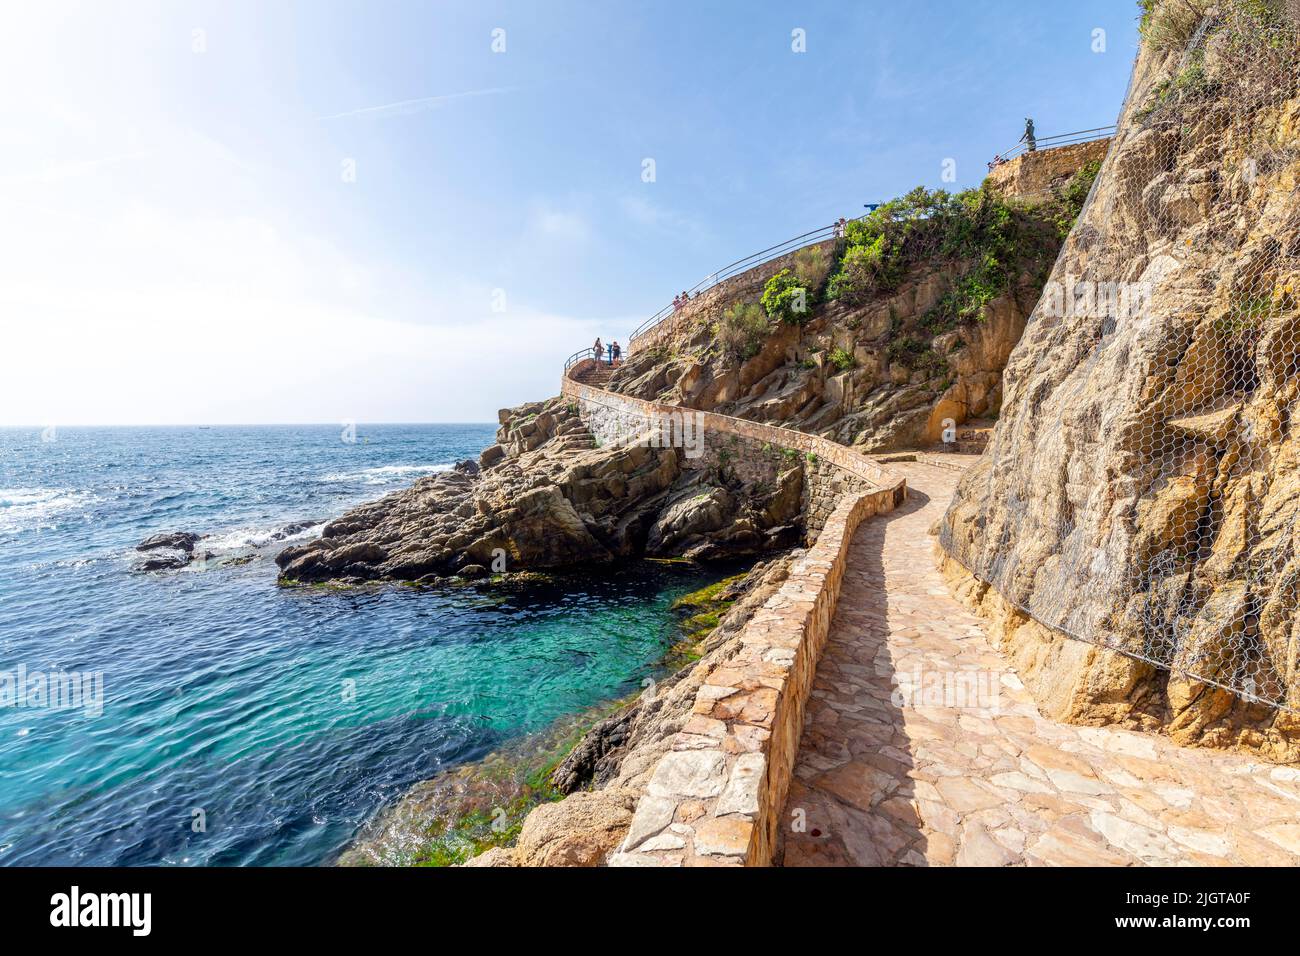 Le sentier de flanc de colline menant aux Jardins de Santa Clotilde sur la côte de la Costa Brava de Lloret de Mar, en Espagne. Banque D'Images